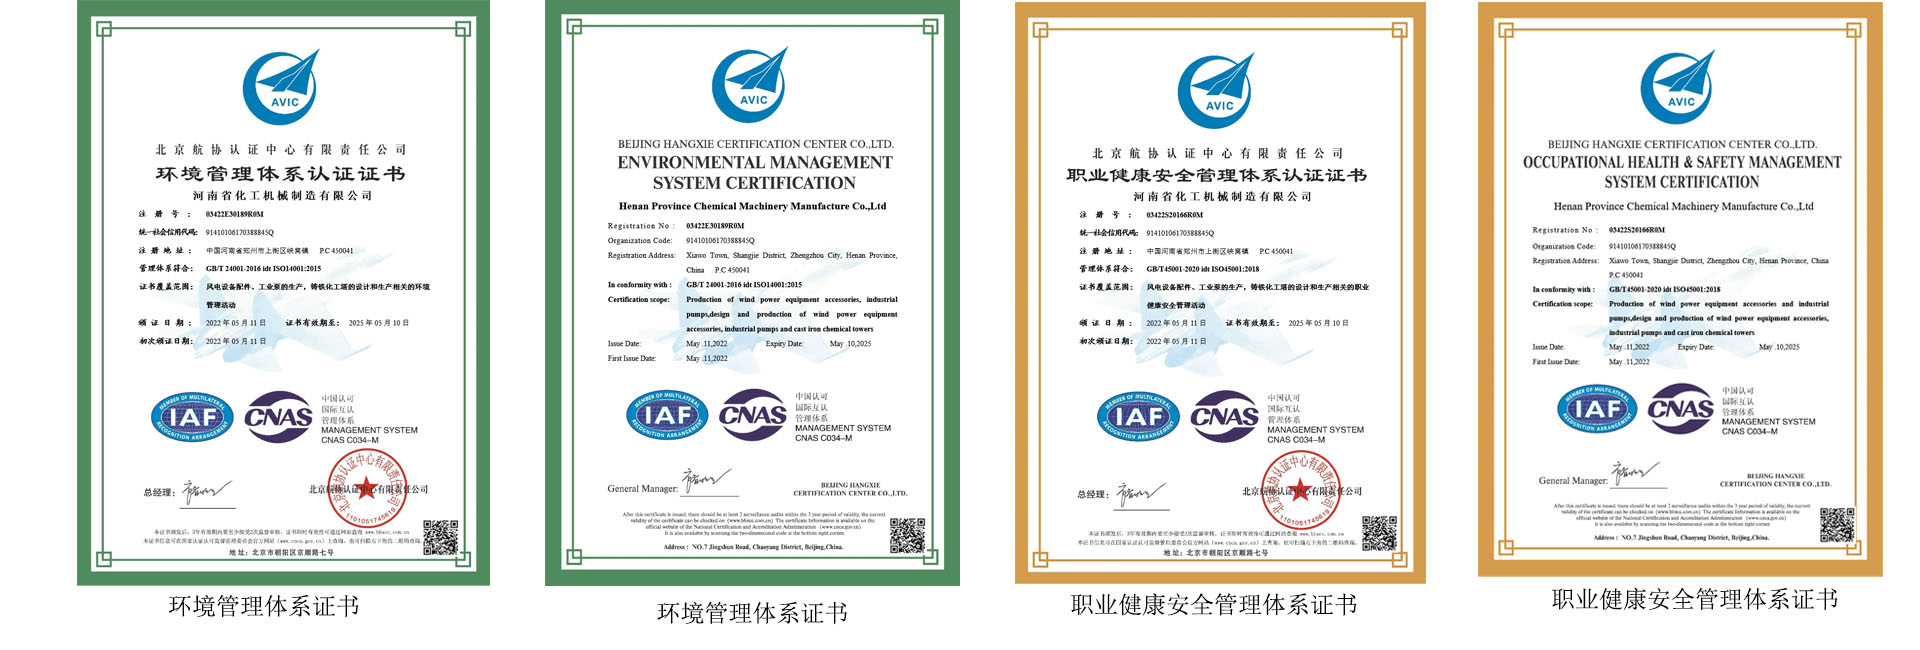 铸造厂环境管理体系证书职业健康安全体系证书.jpg